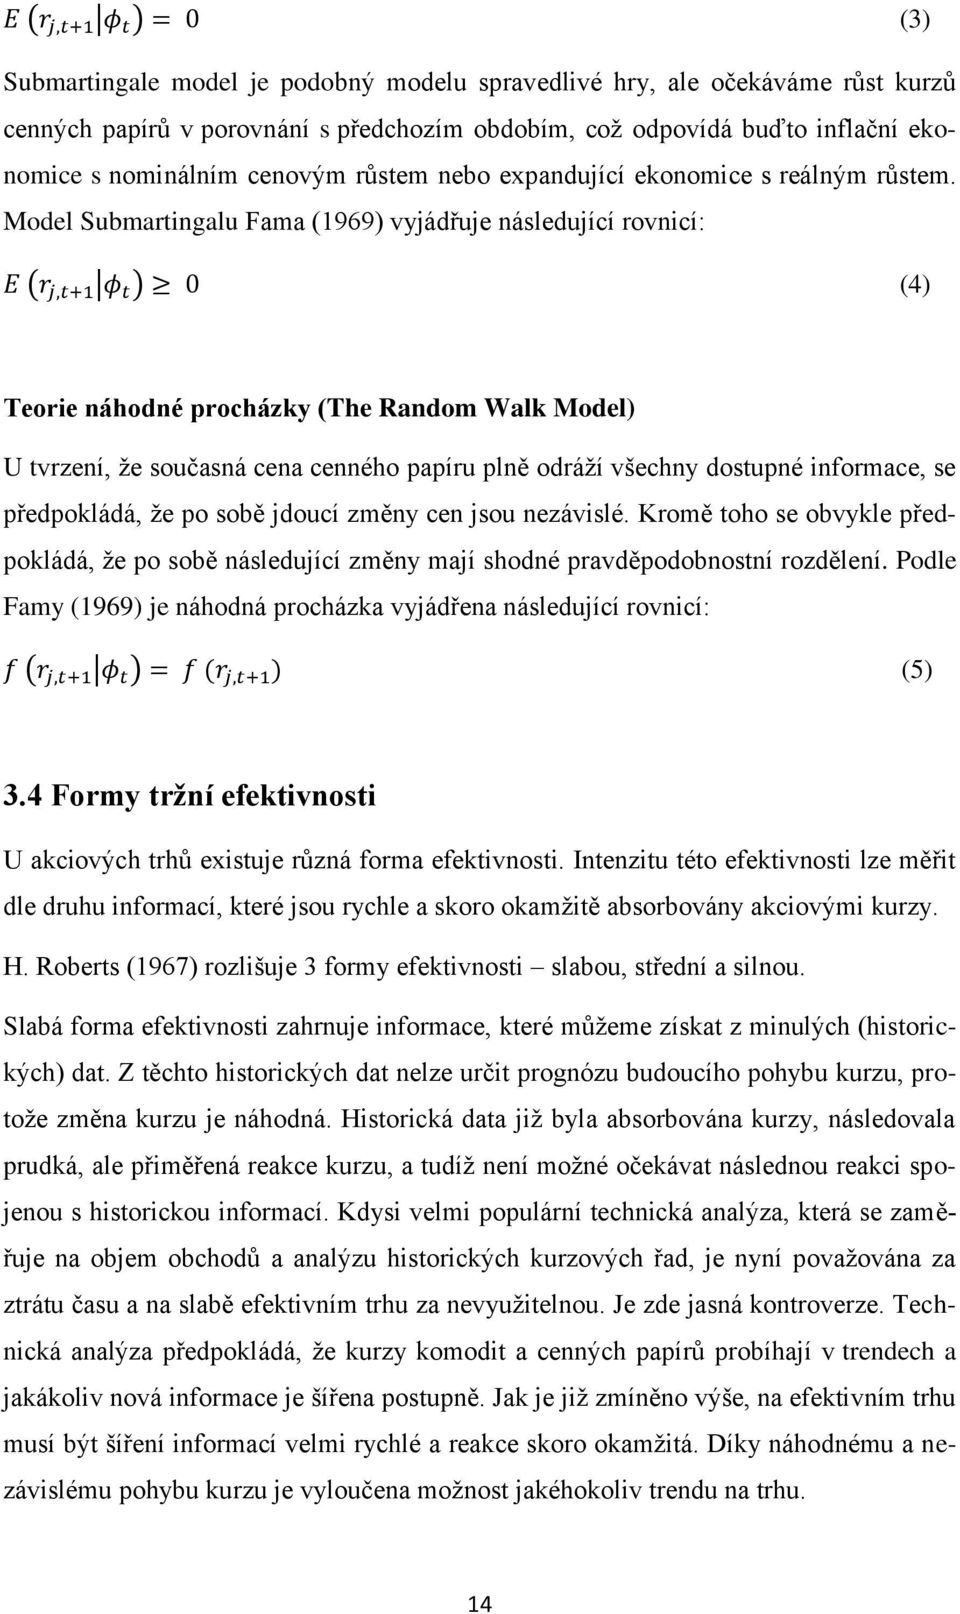 Model Submartingalu Fama (1969) vyjádřuje následující rovnicí: ( ) (4) Teorie náhodné procházky (The Random Walk Model) U tvrzení, že současná cena cenného papíru plně odráží všechny dostupné